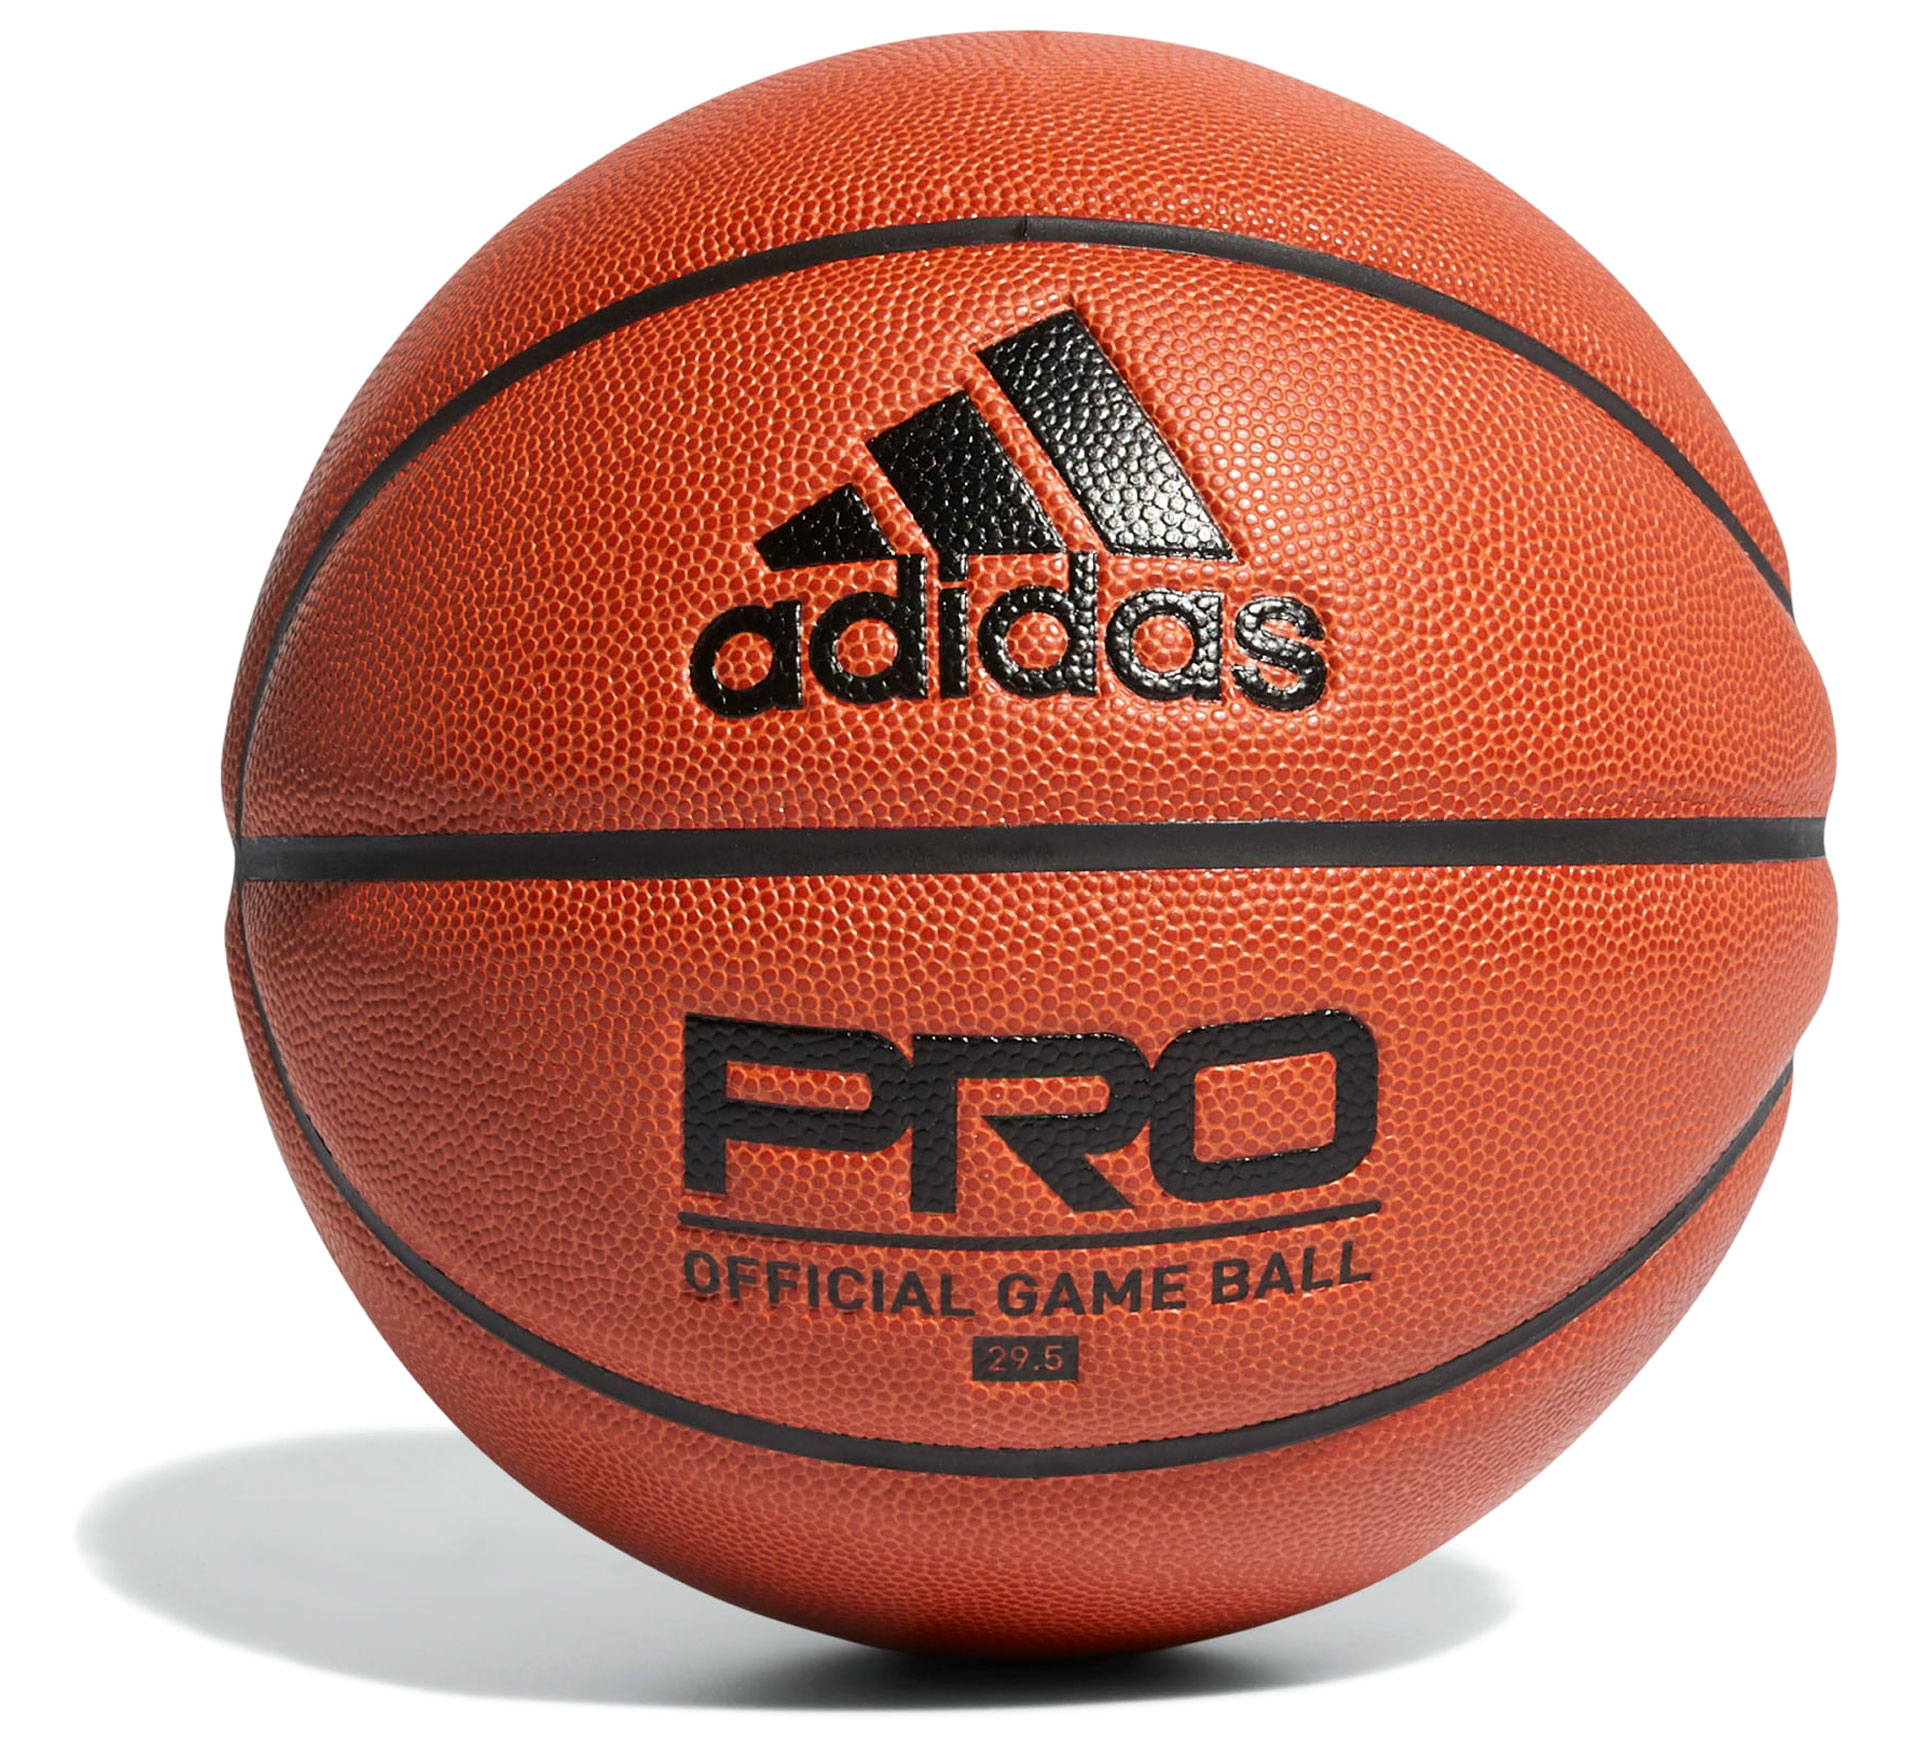 Ballon de basket Adidas Pro Official Game